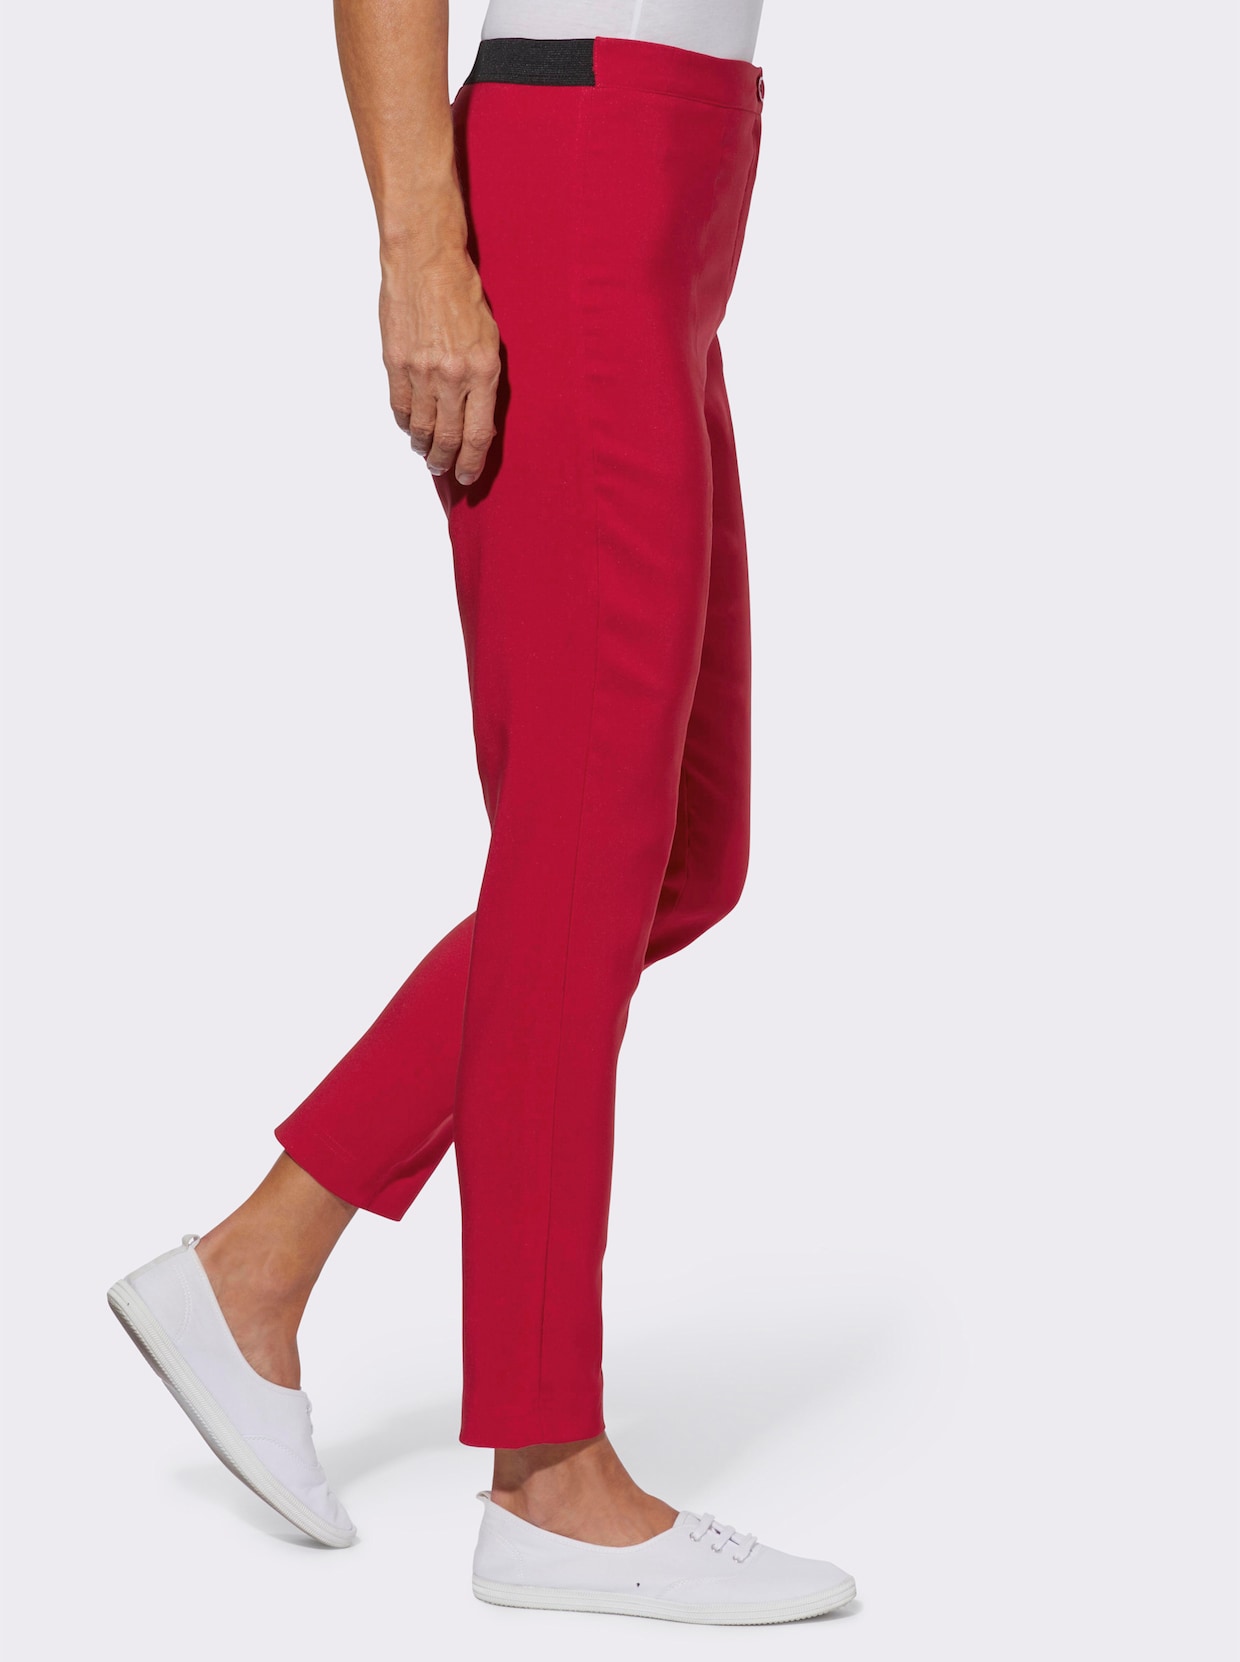 Bengalínové kalhoty - červená